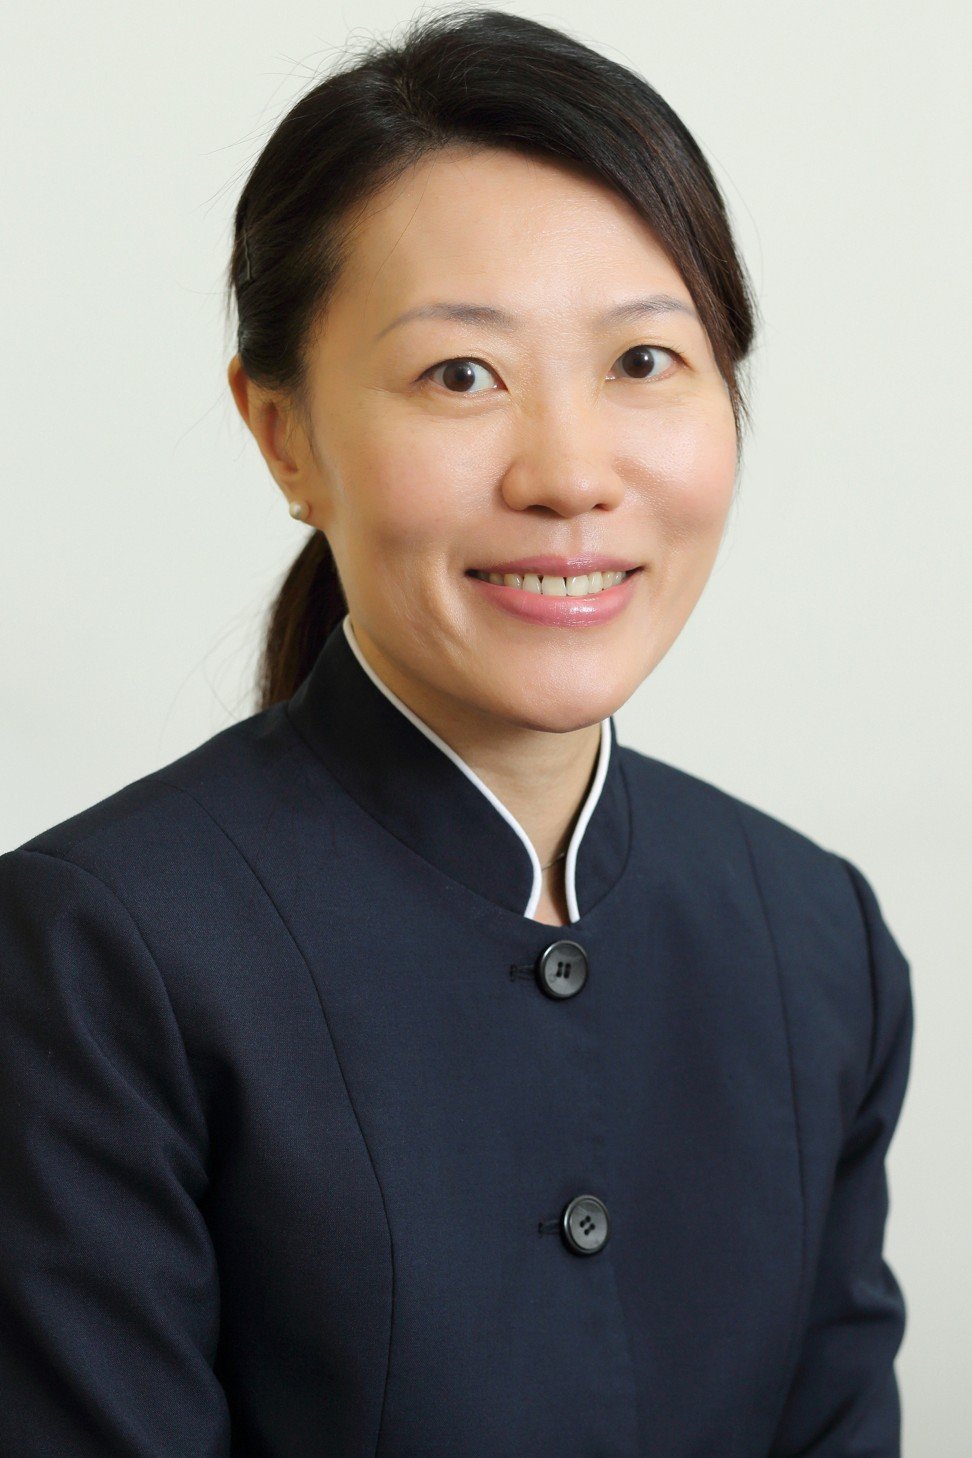 Karen Chong, a dietitian at Hong Kong’s Matilda International Hospital.